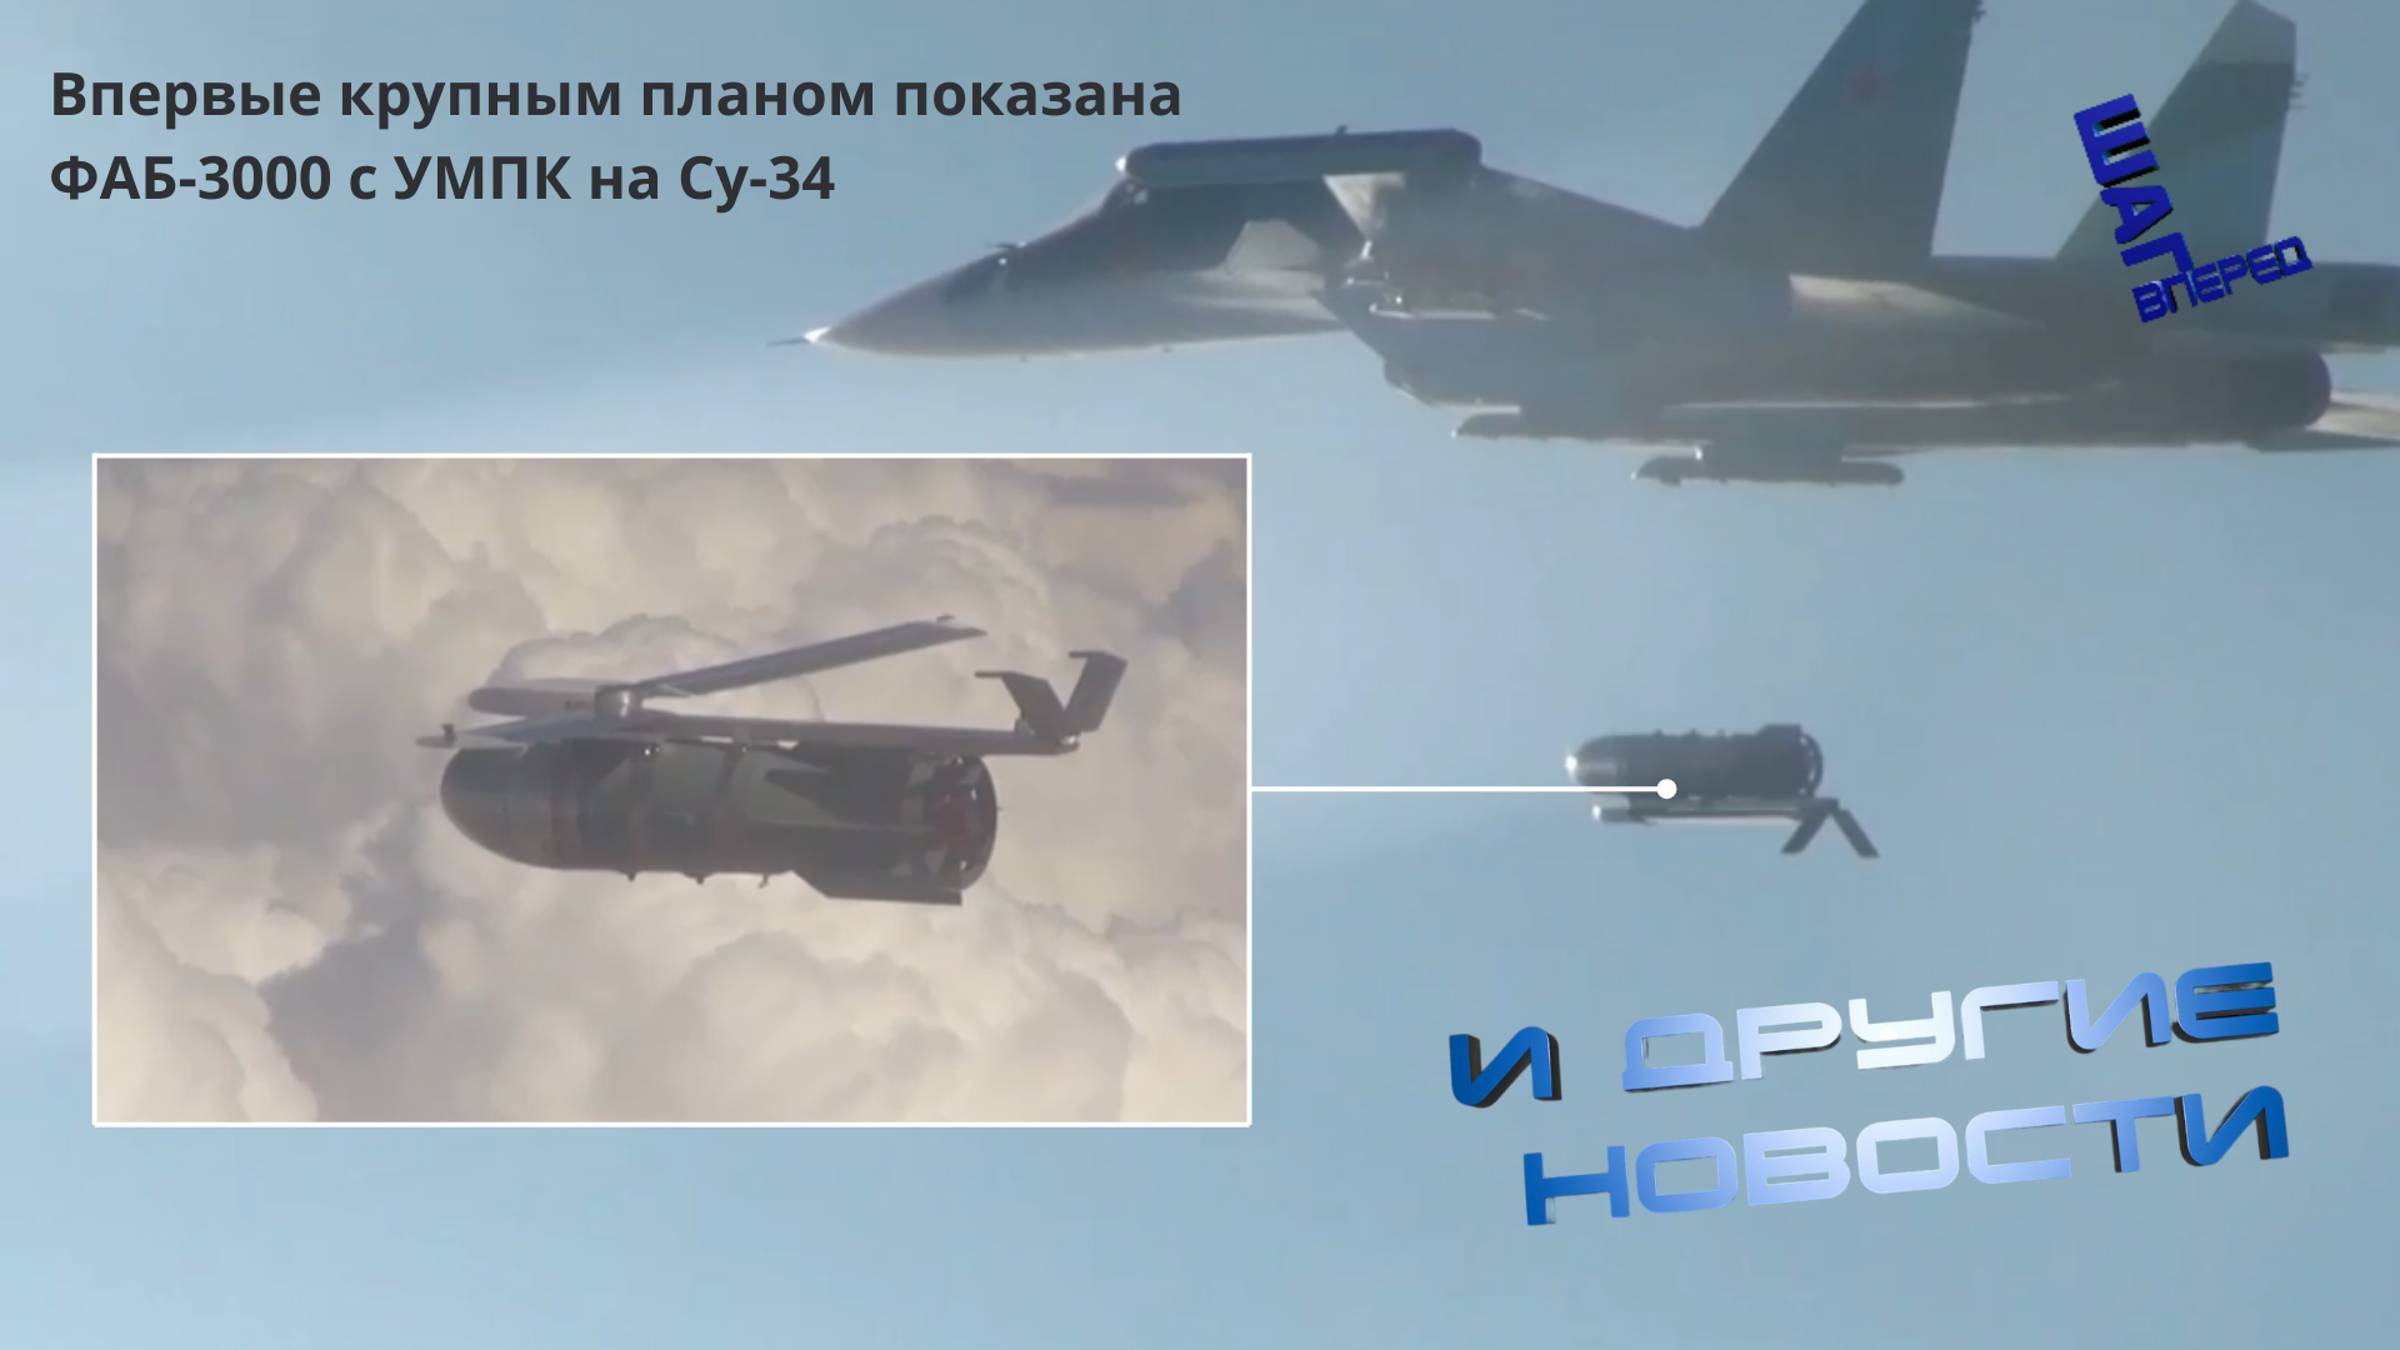 Впервые крупным планом показана ФАБ-3000 с УМПК на Су-34. Другие новости